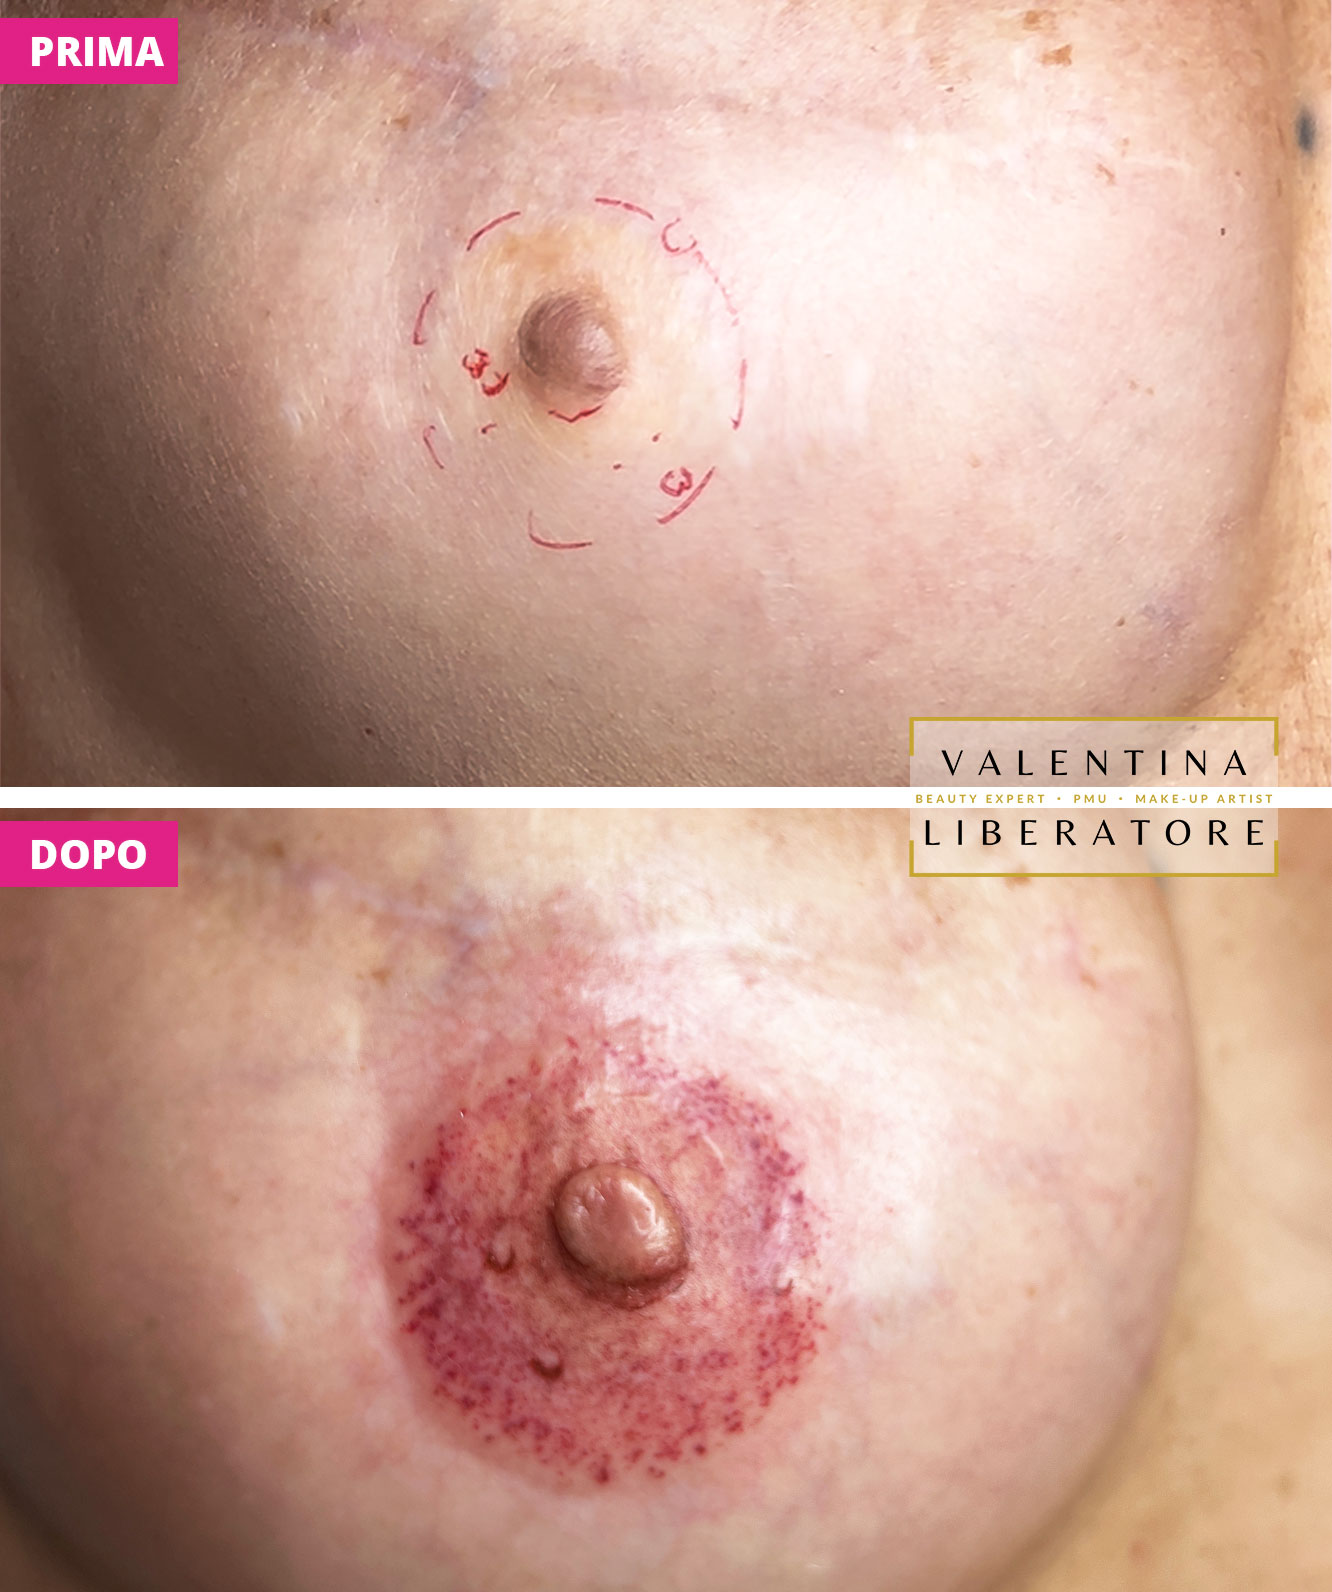 Dermopigmentazione prima/dopo